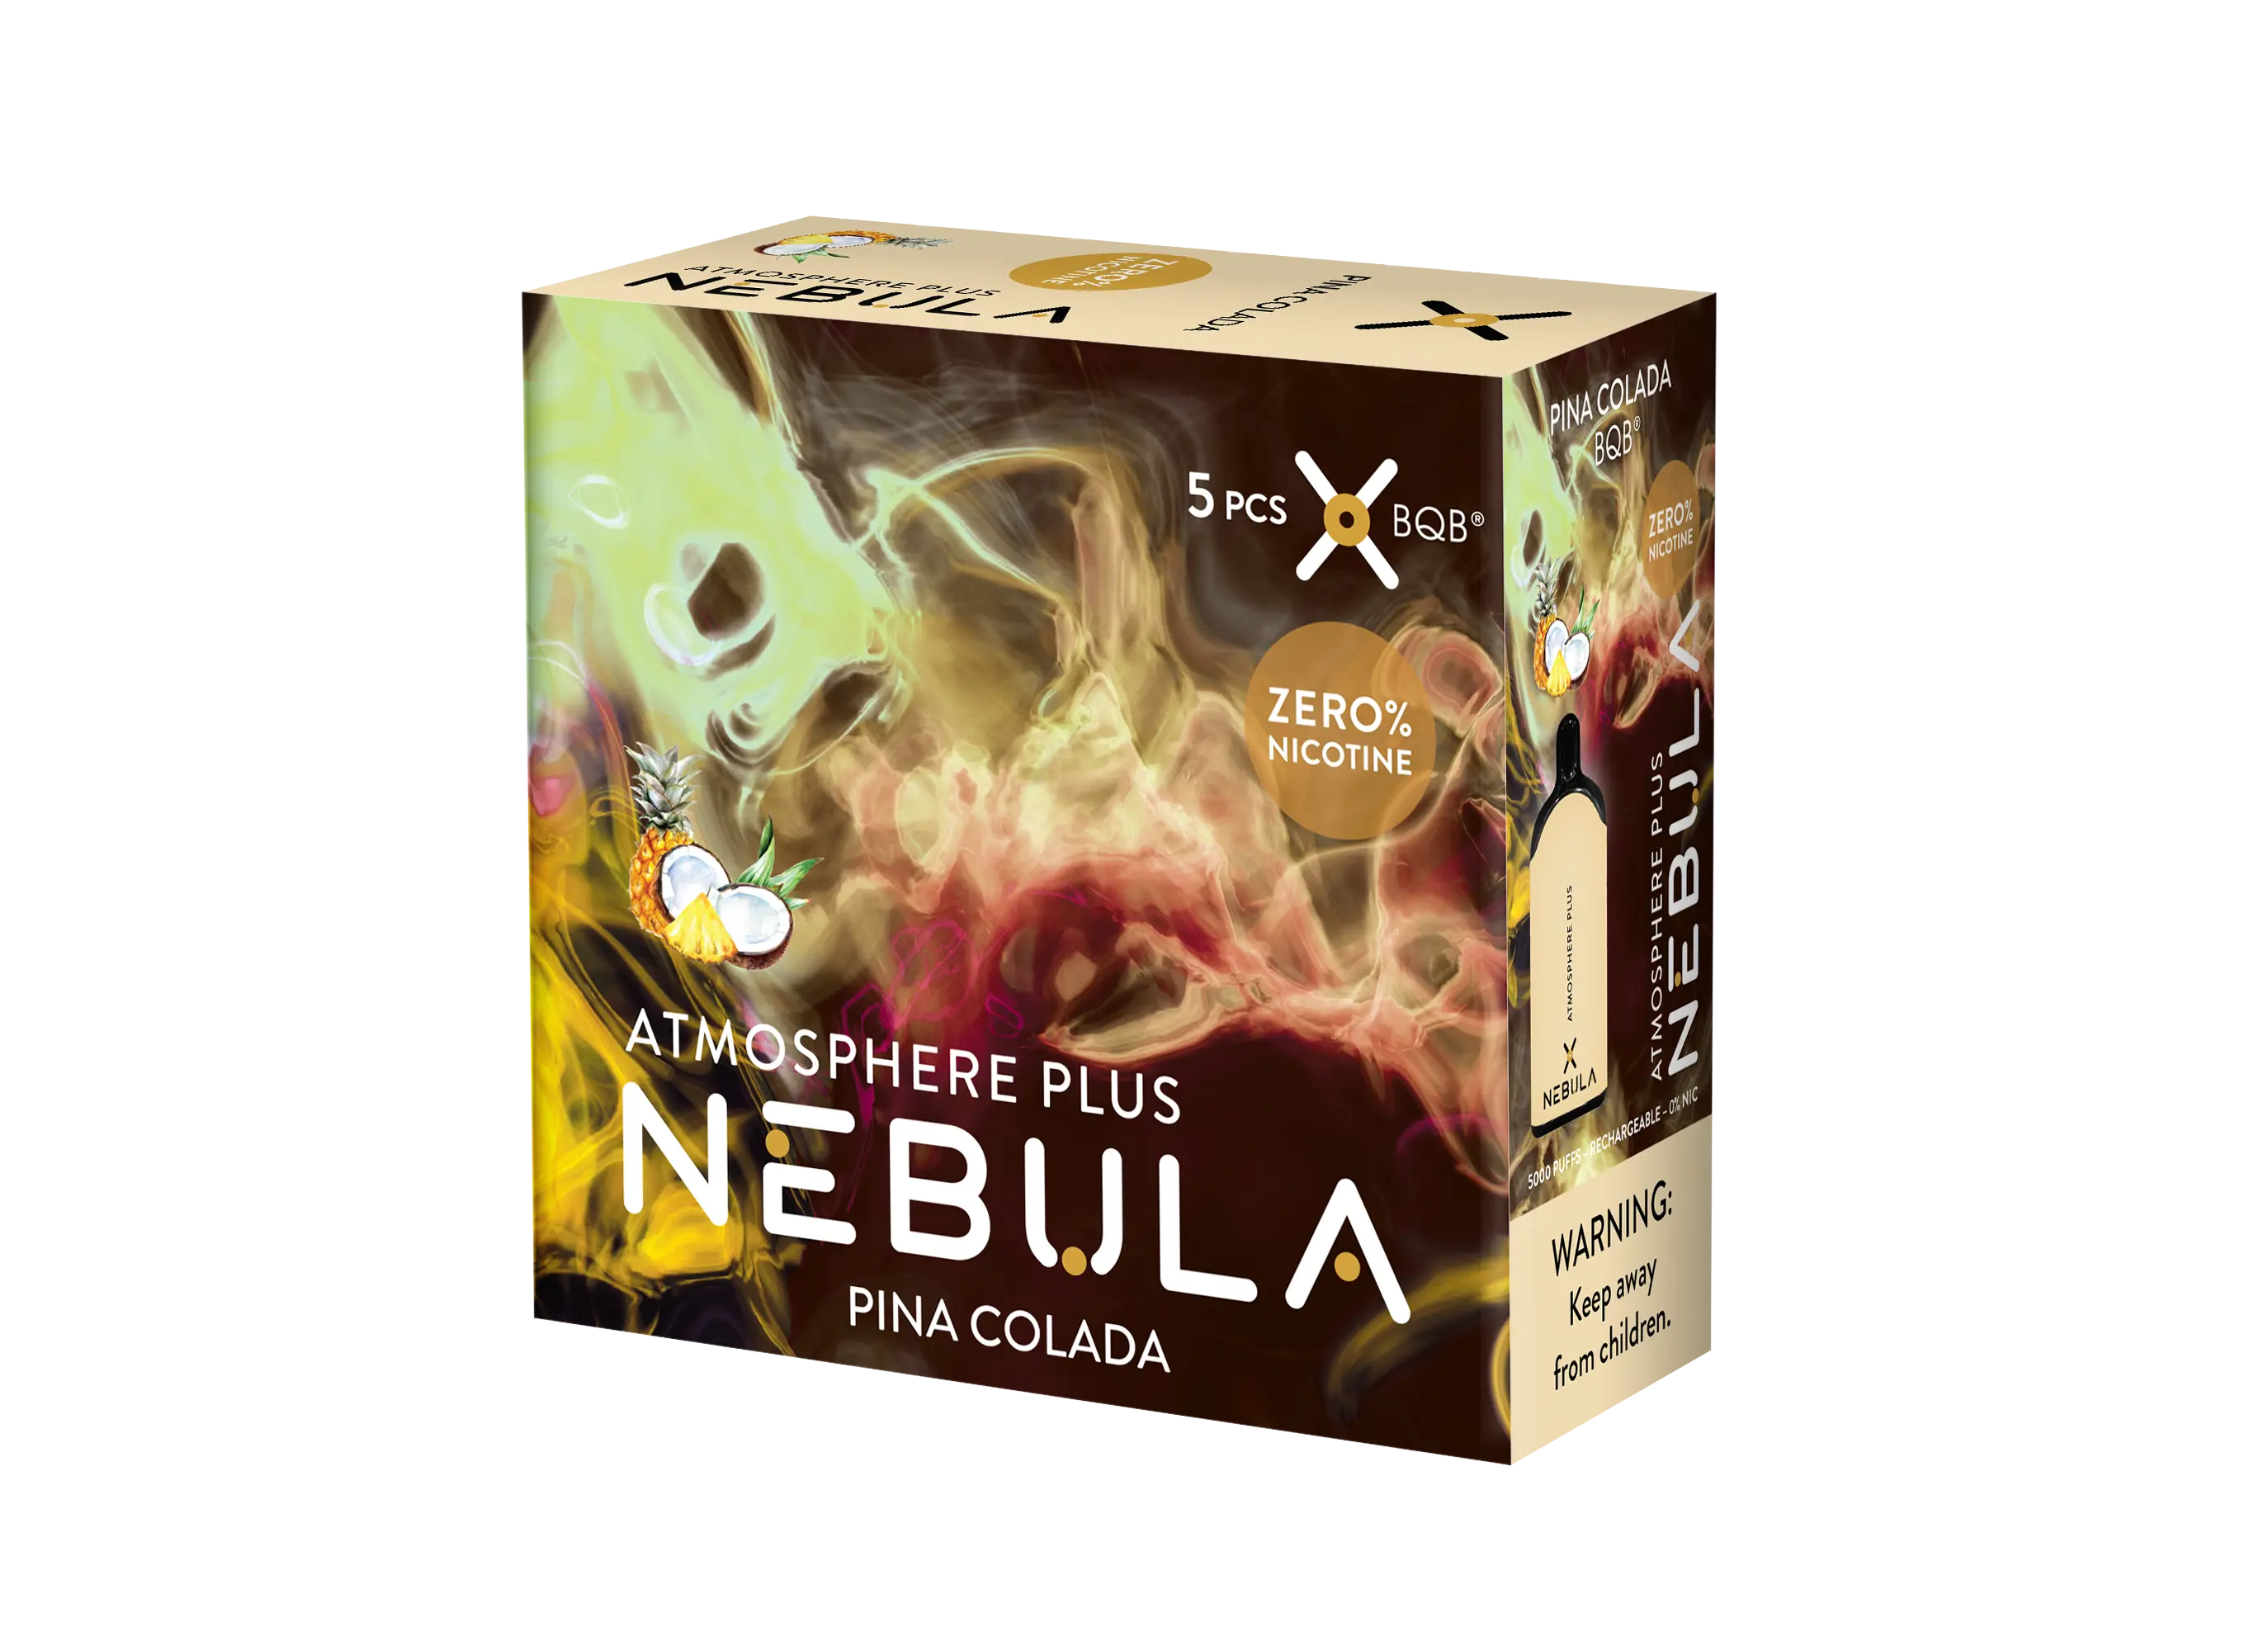 Nebula Atmosphere Plus 0% 5000 Puffs - Pina Colada - B2B Nebula